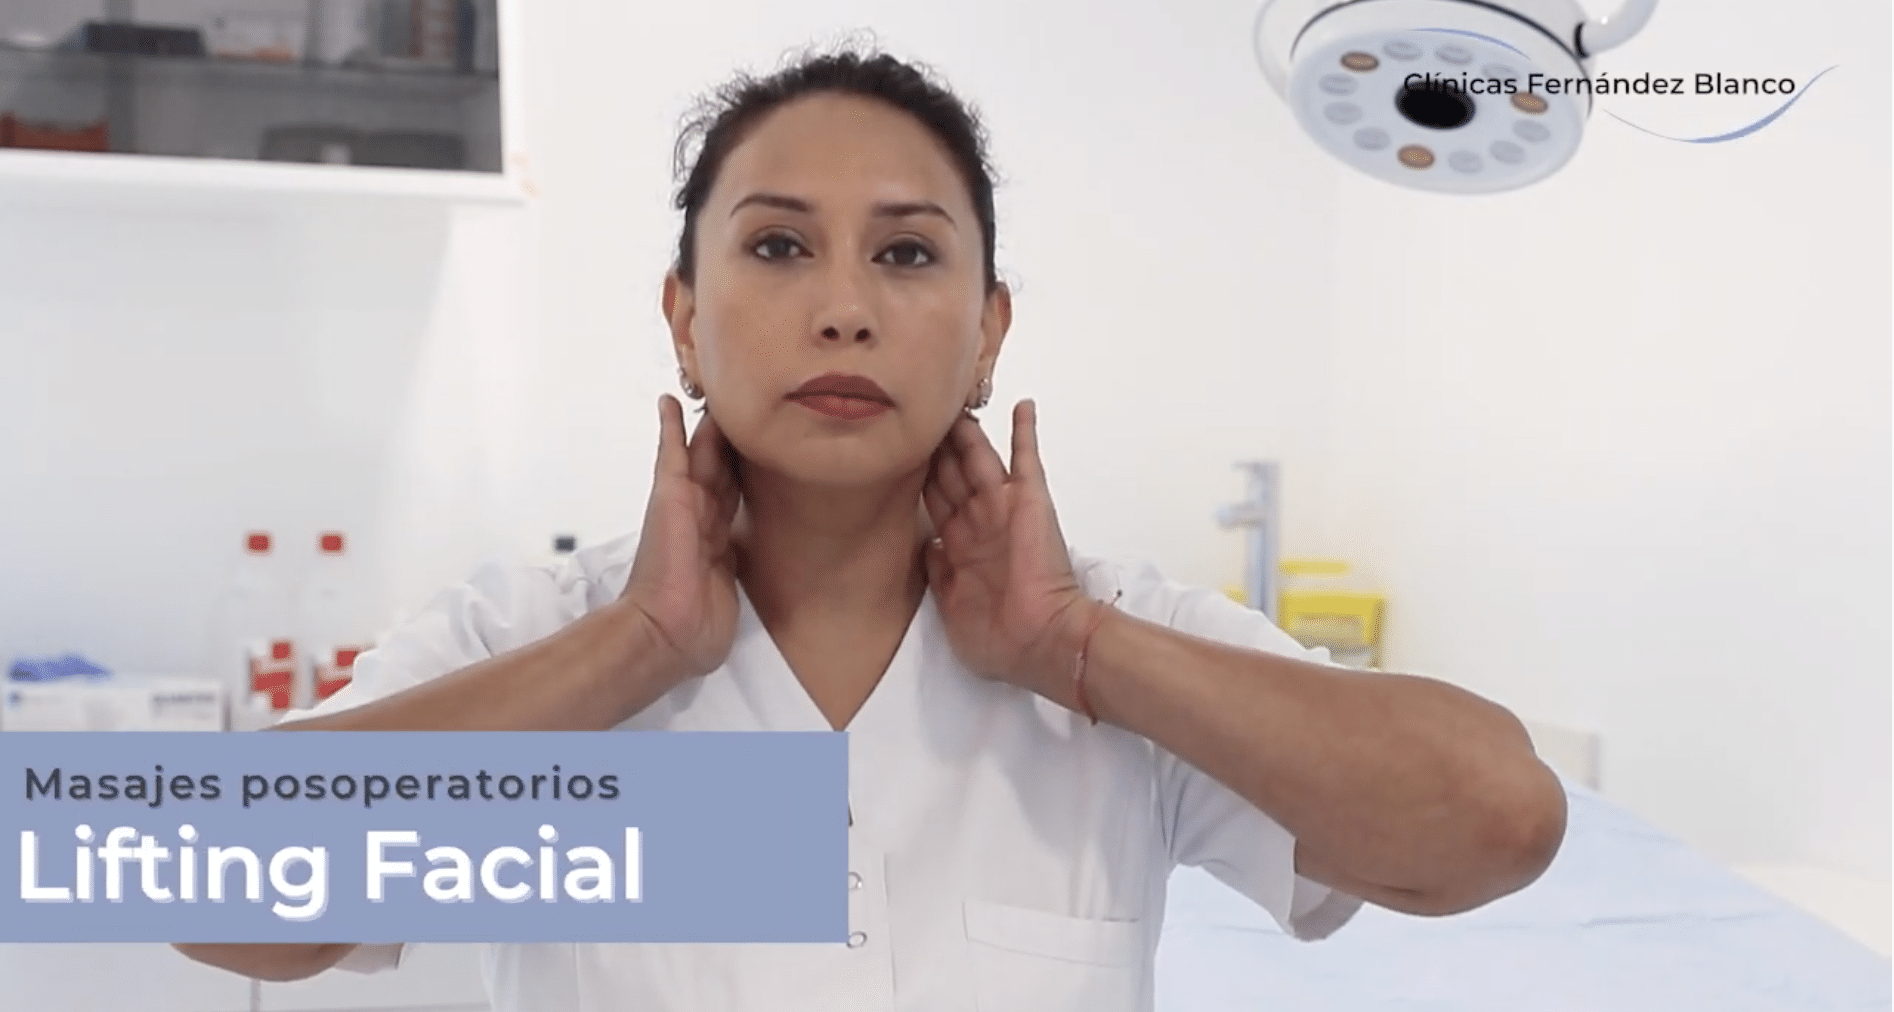 Videoblog acerca de los masajes posoperatorios del lifting facial